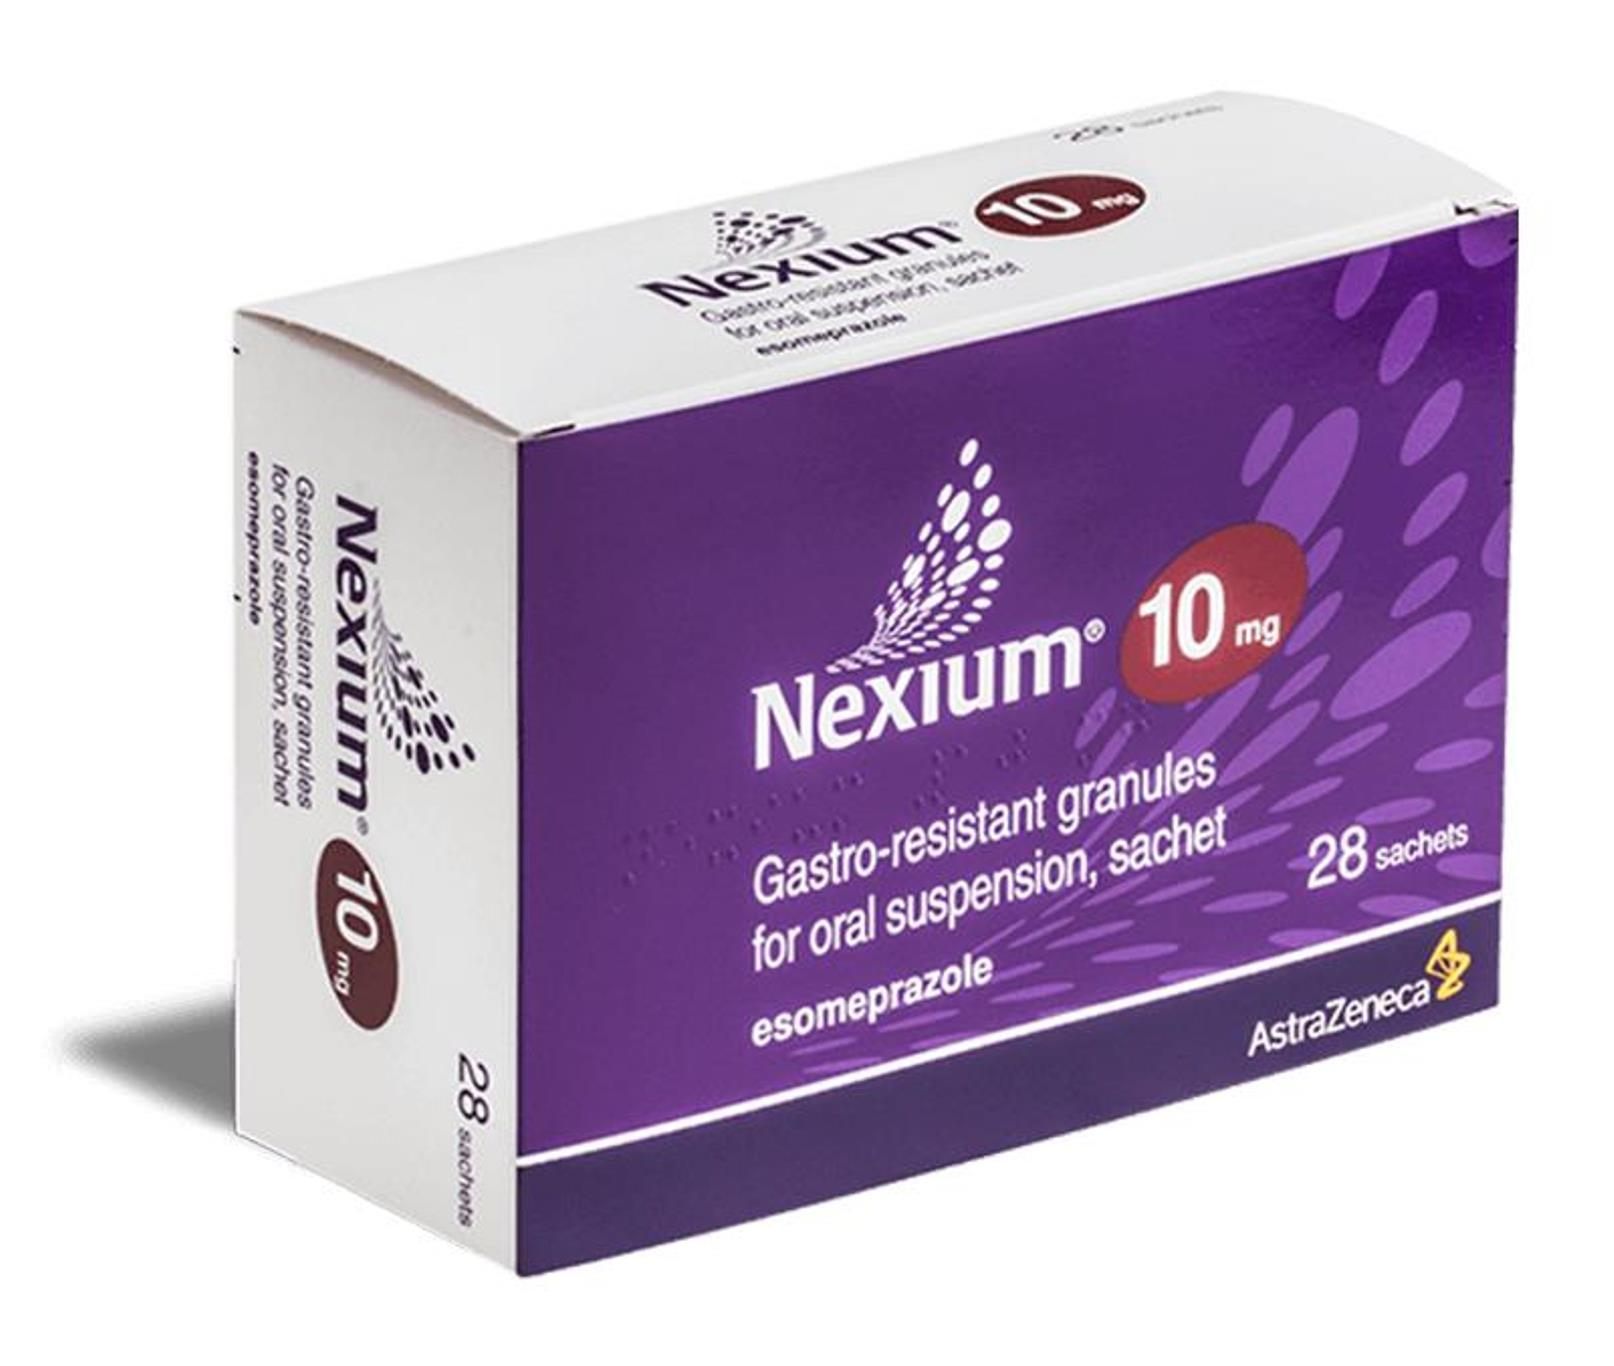 دواعي استعمال nexium 10 mg والاثار الجانبية